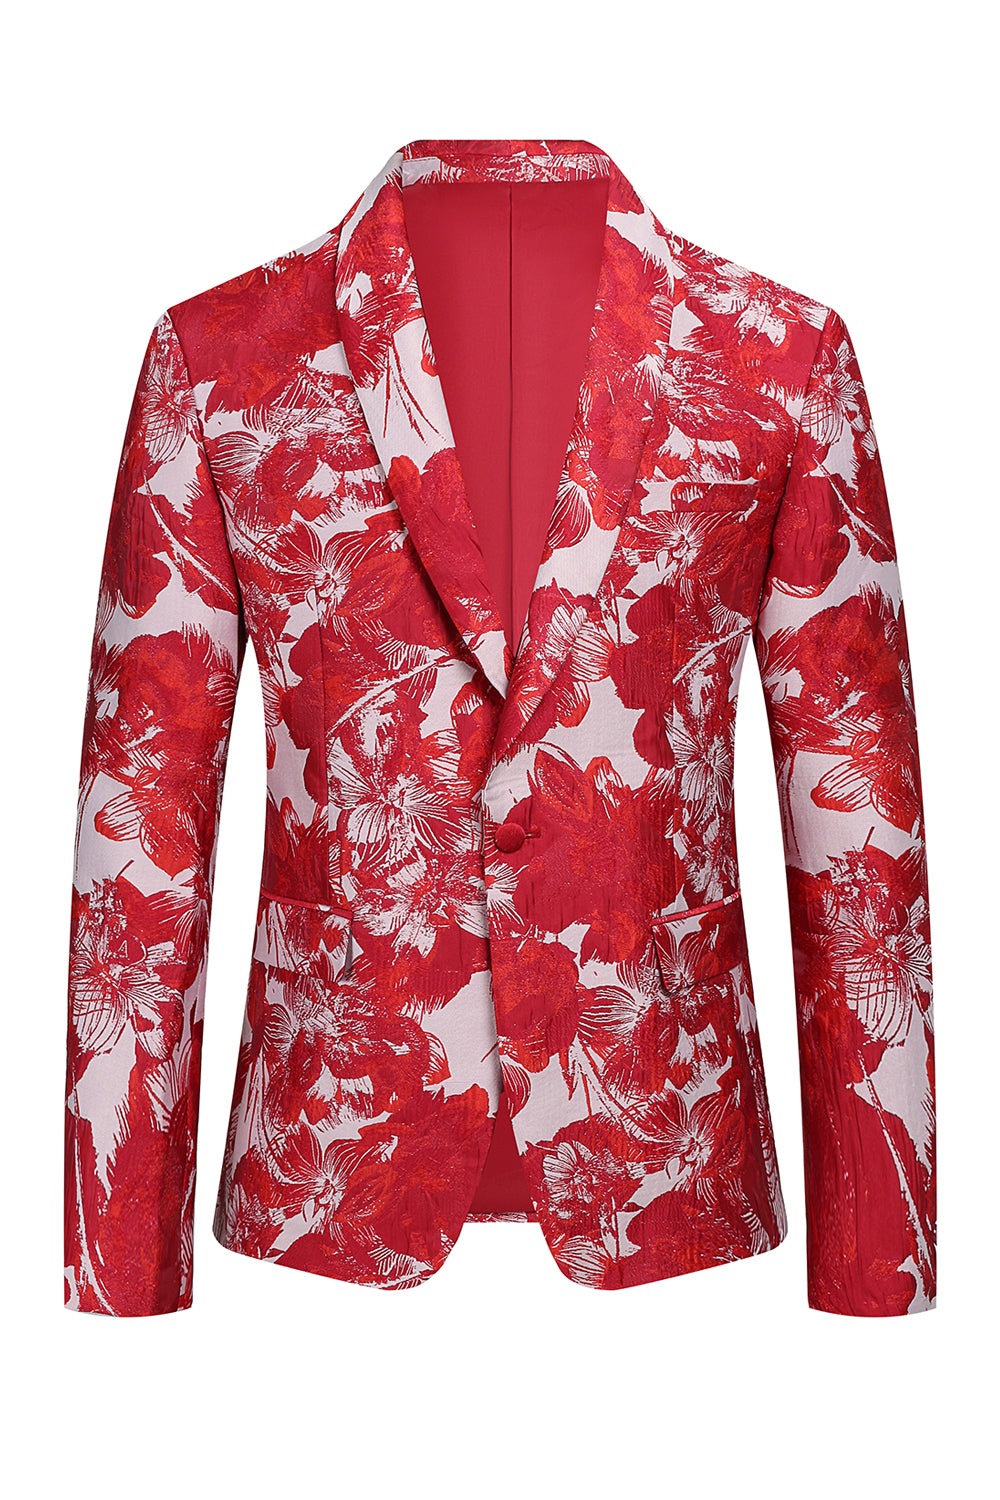 Red Floral Jacquard 2 Piece Men Suits